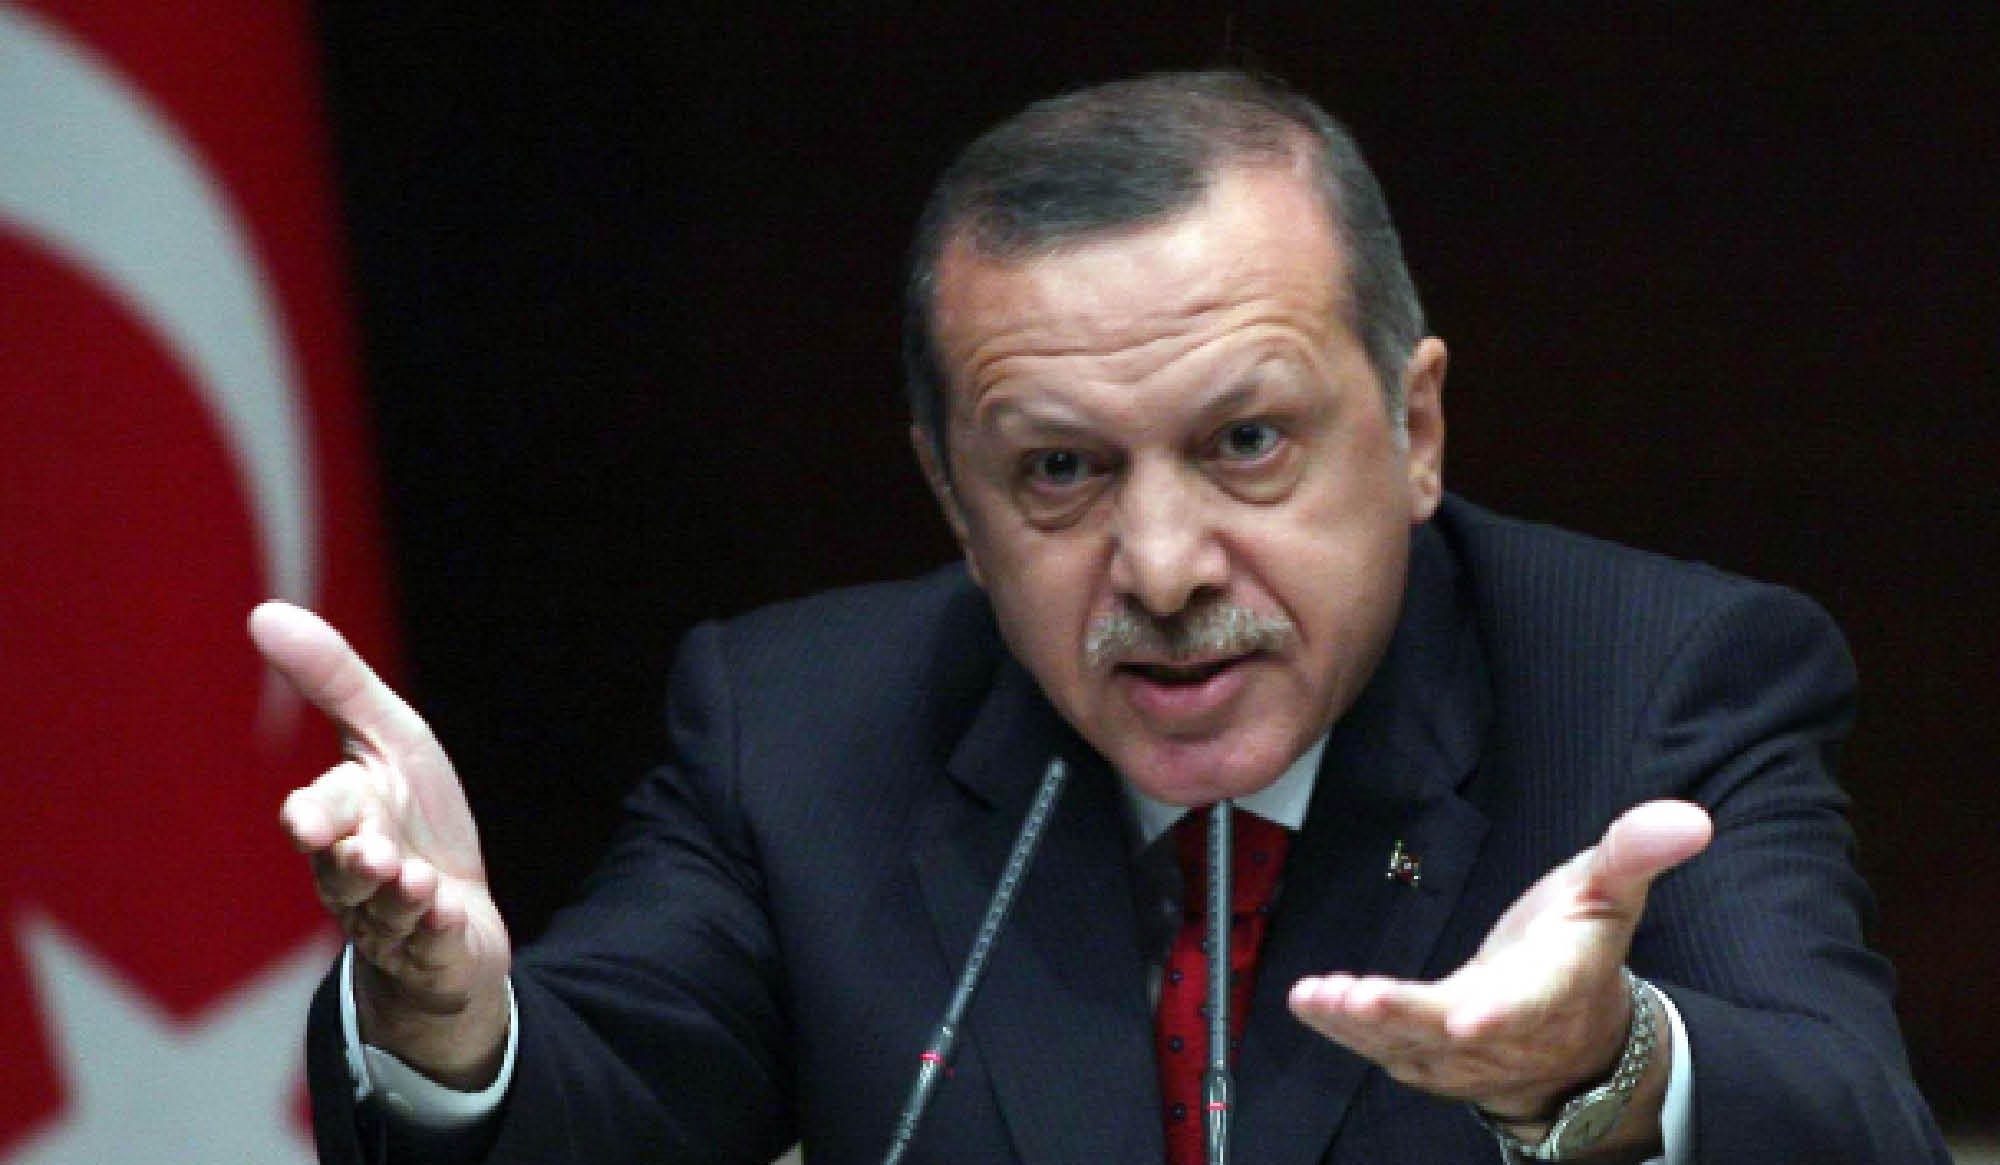 النظام السوري يحاكم أردوغان بتهمة “السرقة وإتلاف المال العام”